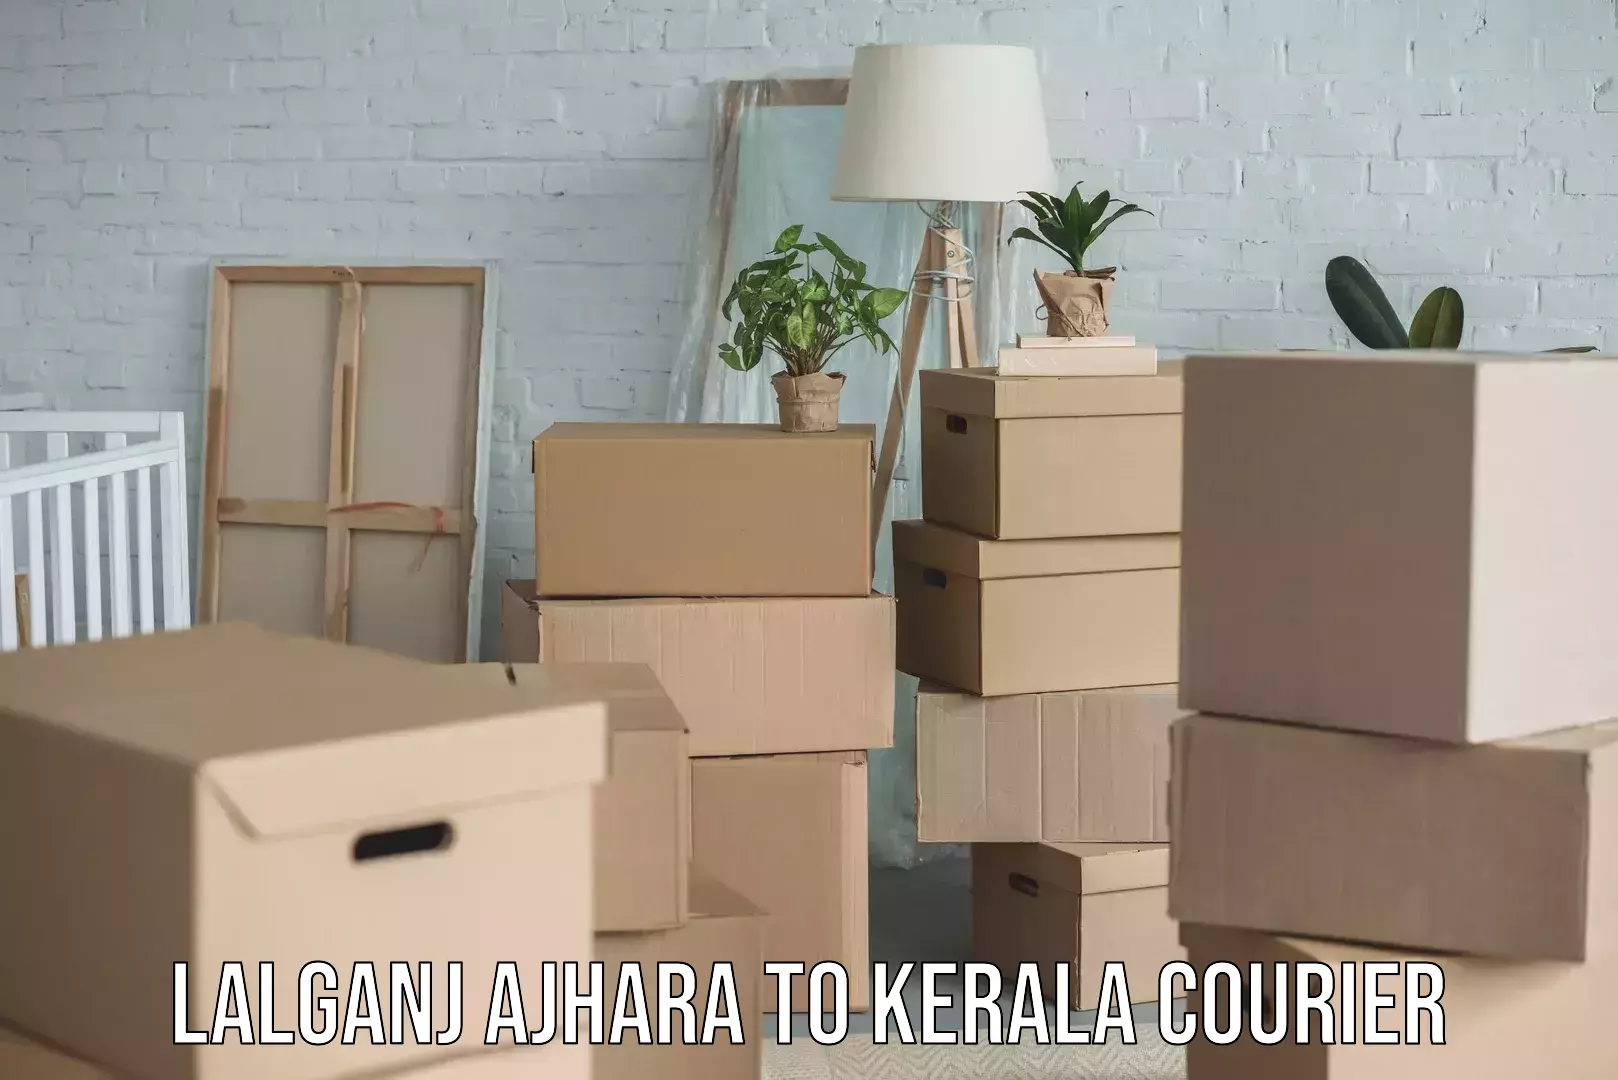 Premium furniture transport Lalganj Ajhara to Kerala